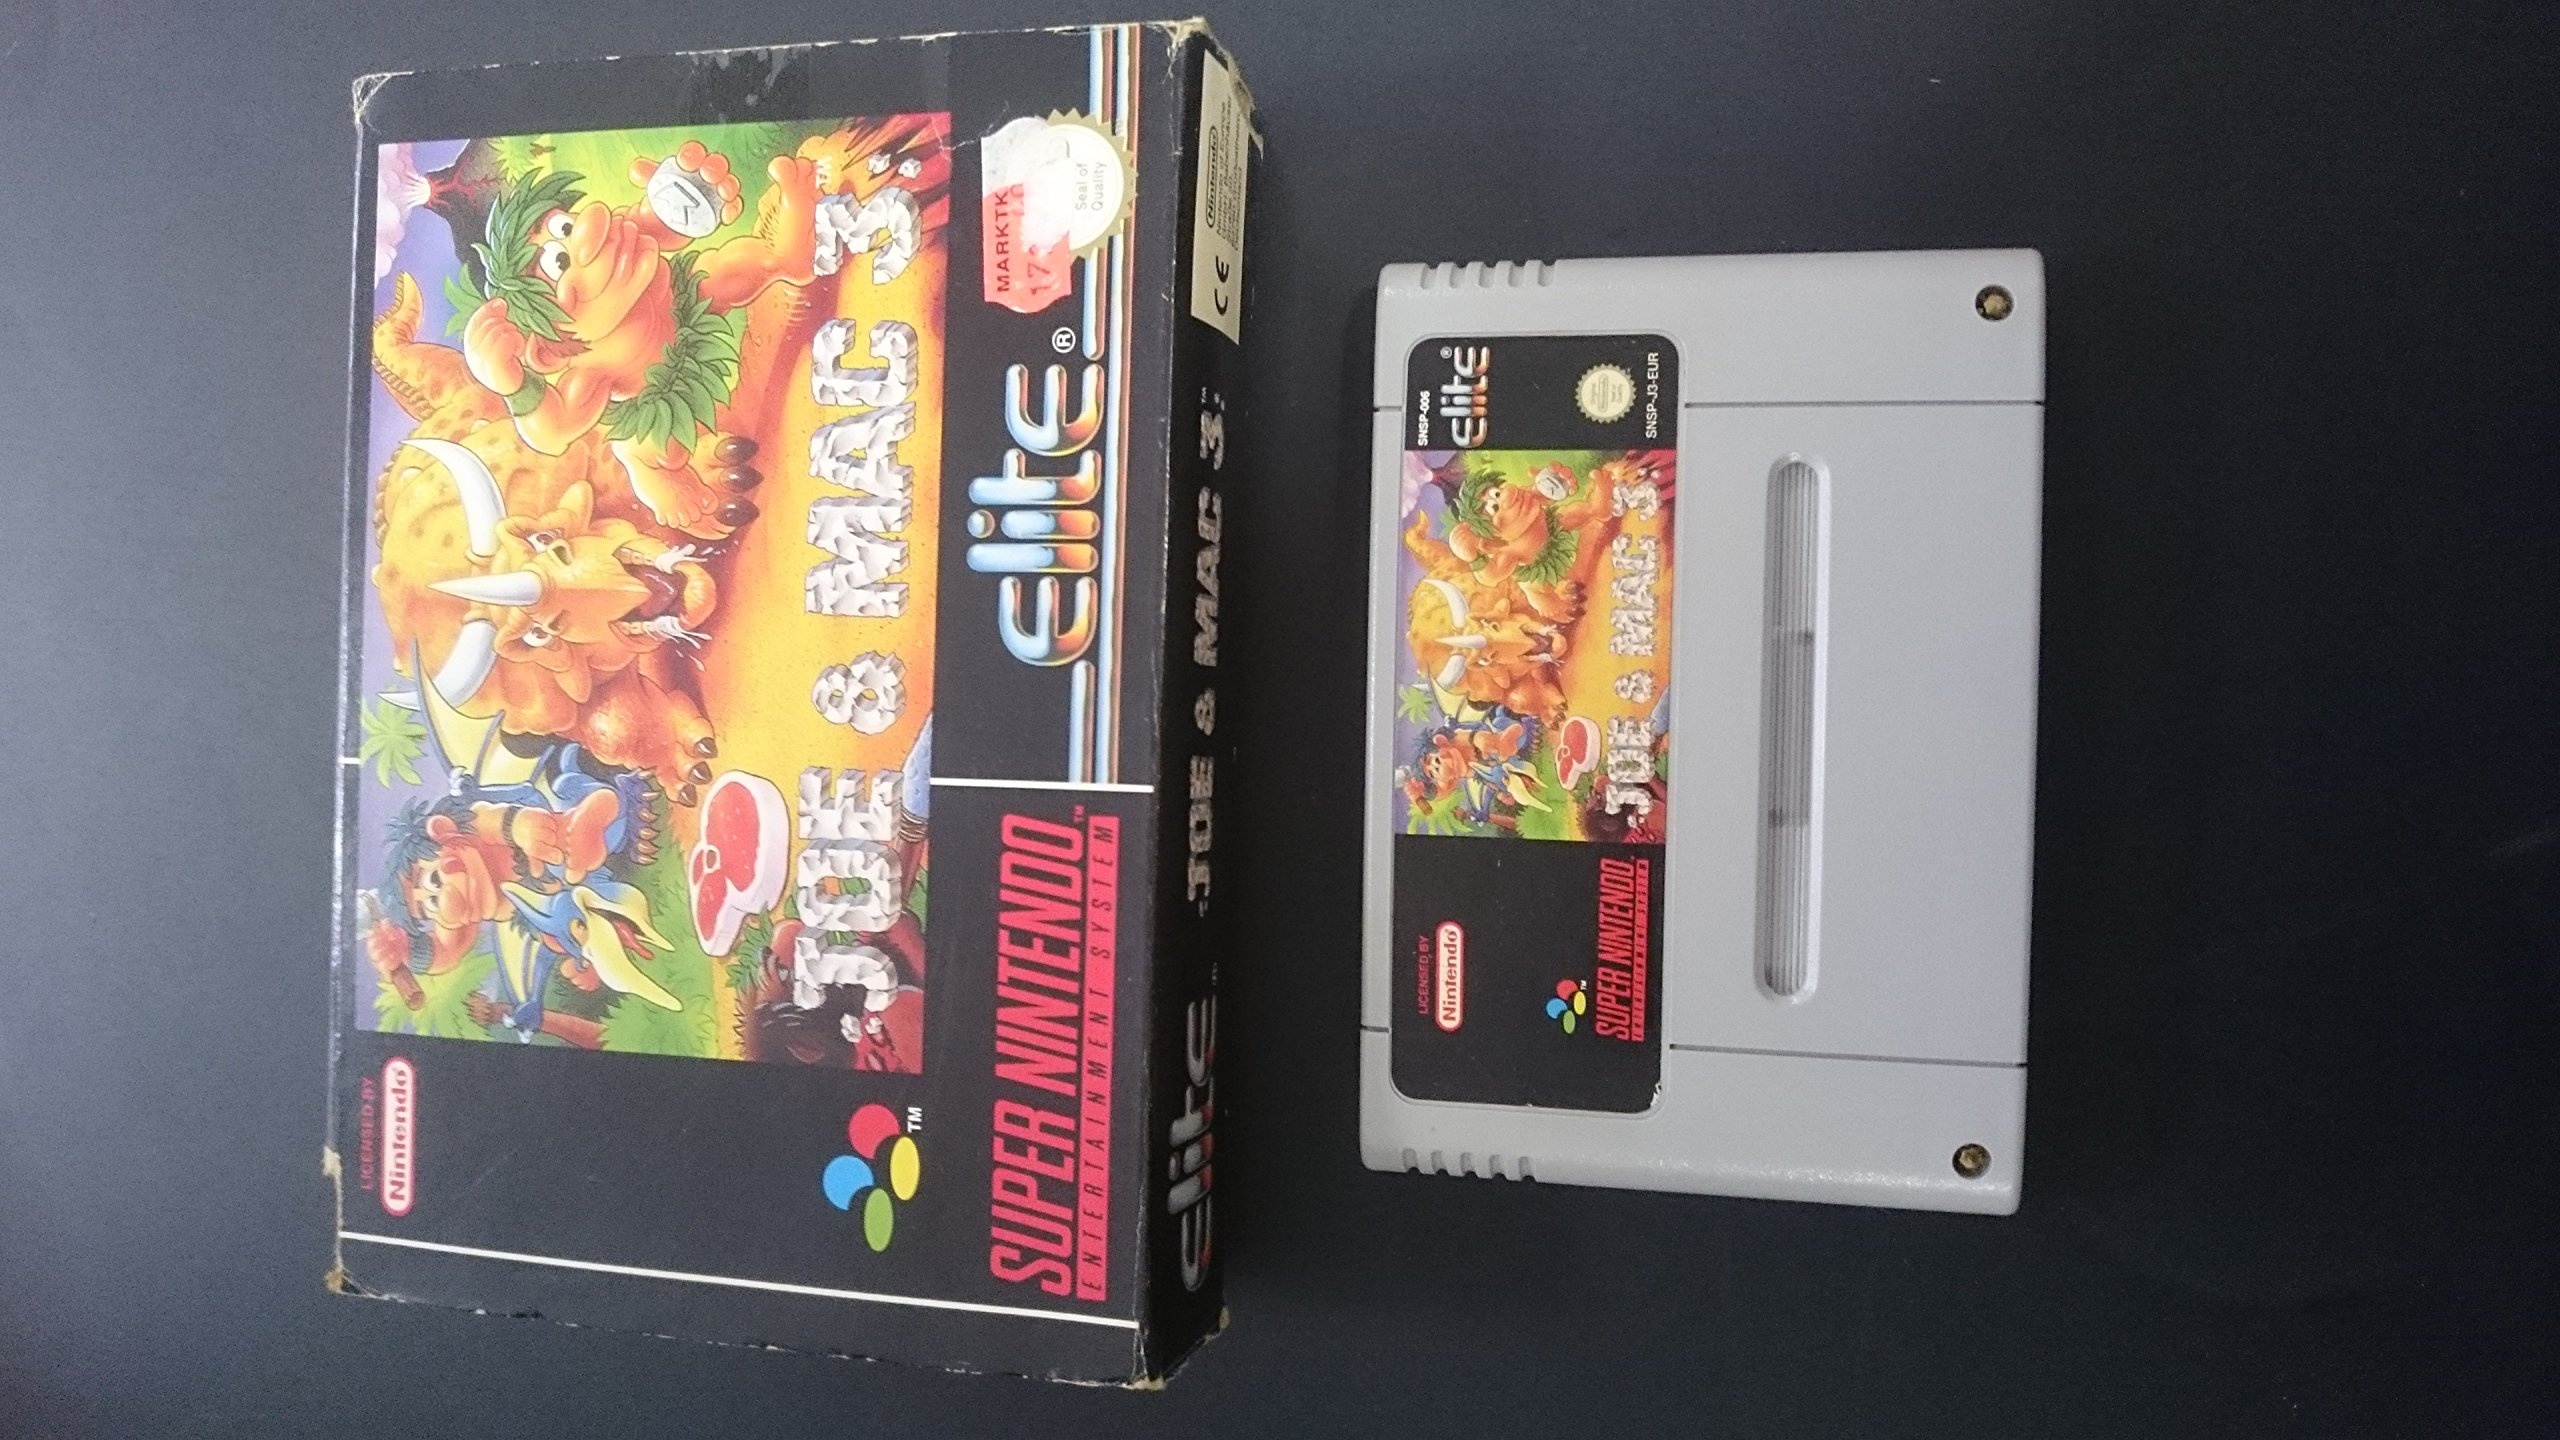 SNES Spiel: Joe & Mac 3 Joe and Mac III NUR DAS EINZELNE SPIEL-MODUL (für SNES Super Nintendo, PAL, deutsch) (Neu differenzbesteuert)